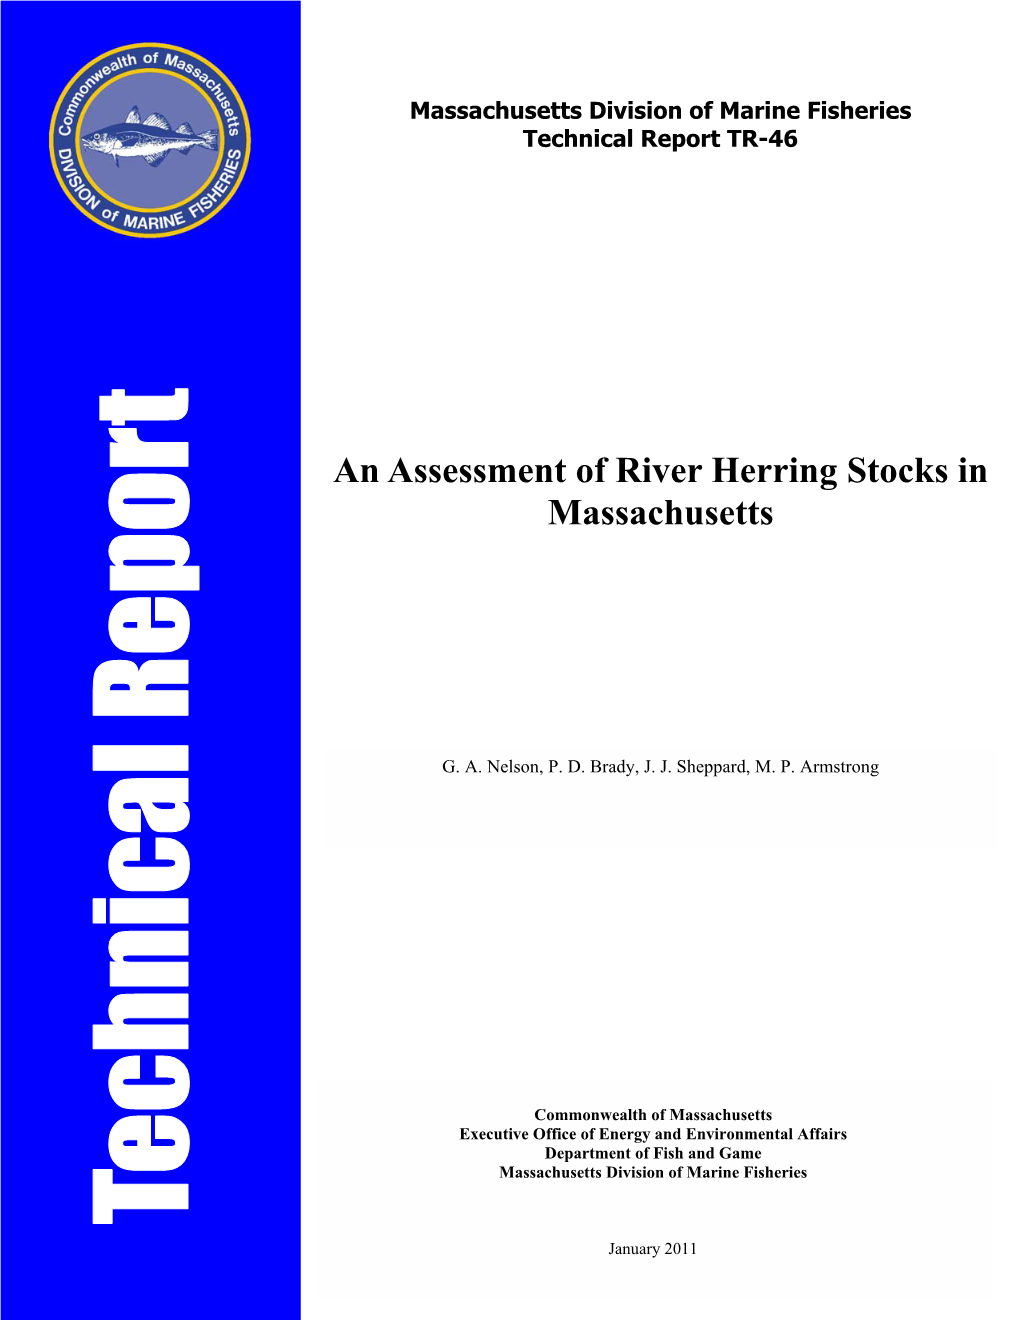 An Assessment of River Herring Stocks in Massachusetts